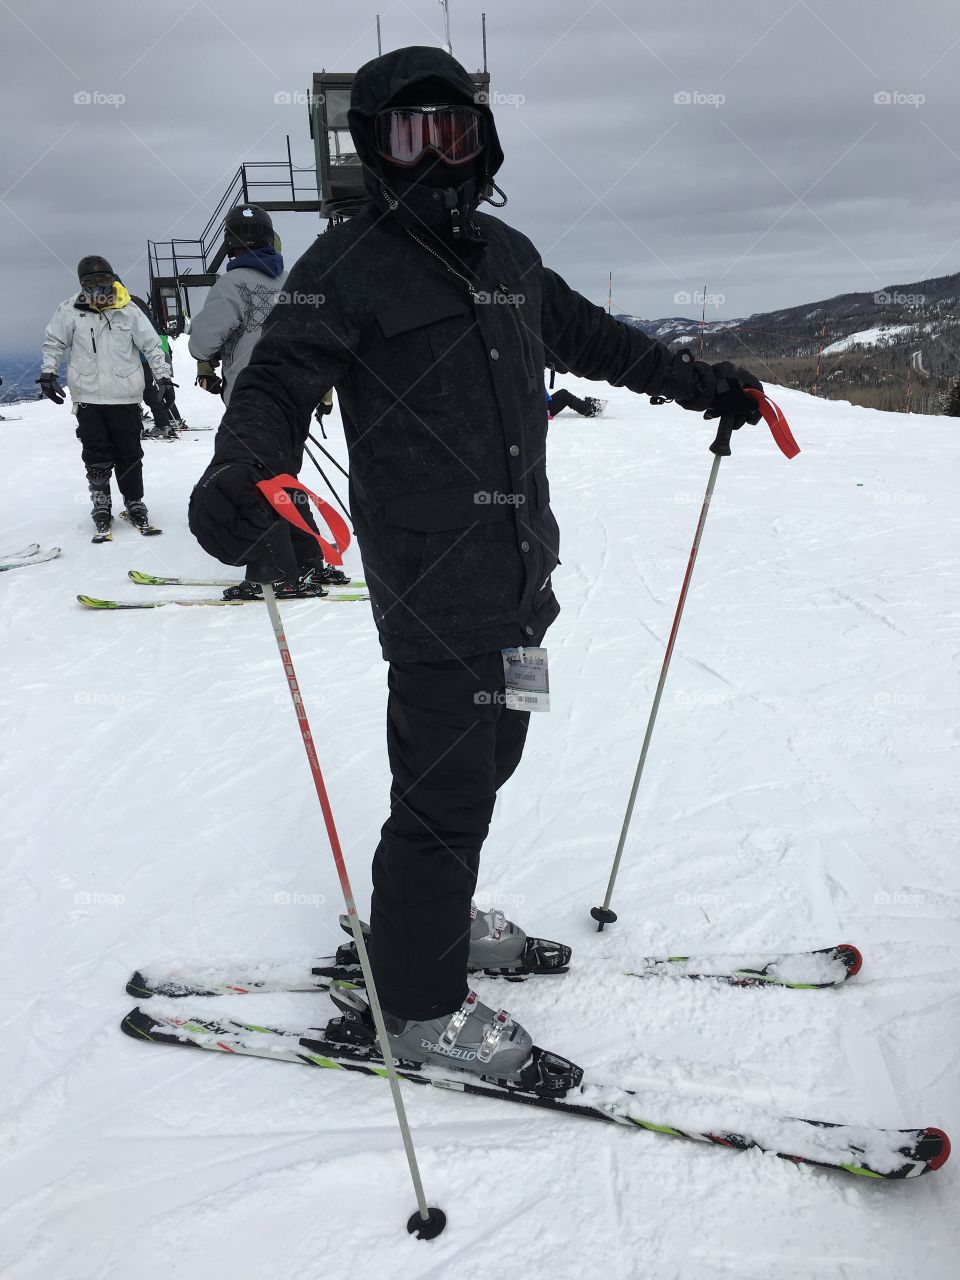 Incognito skier